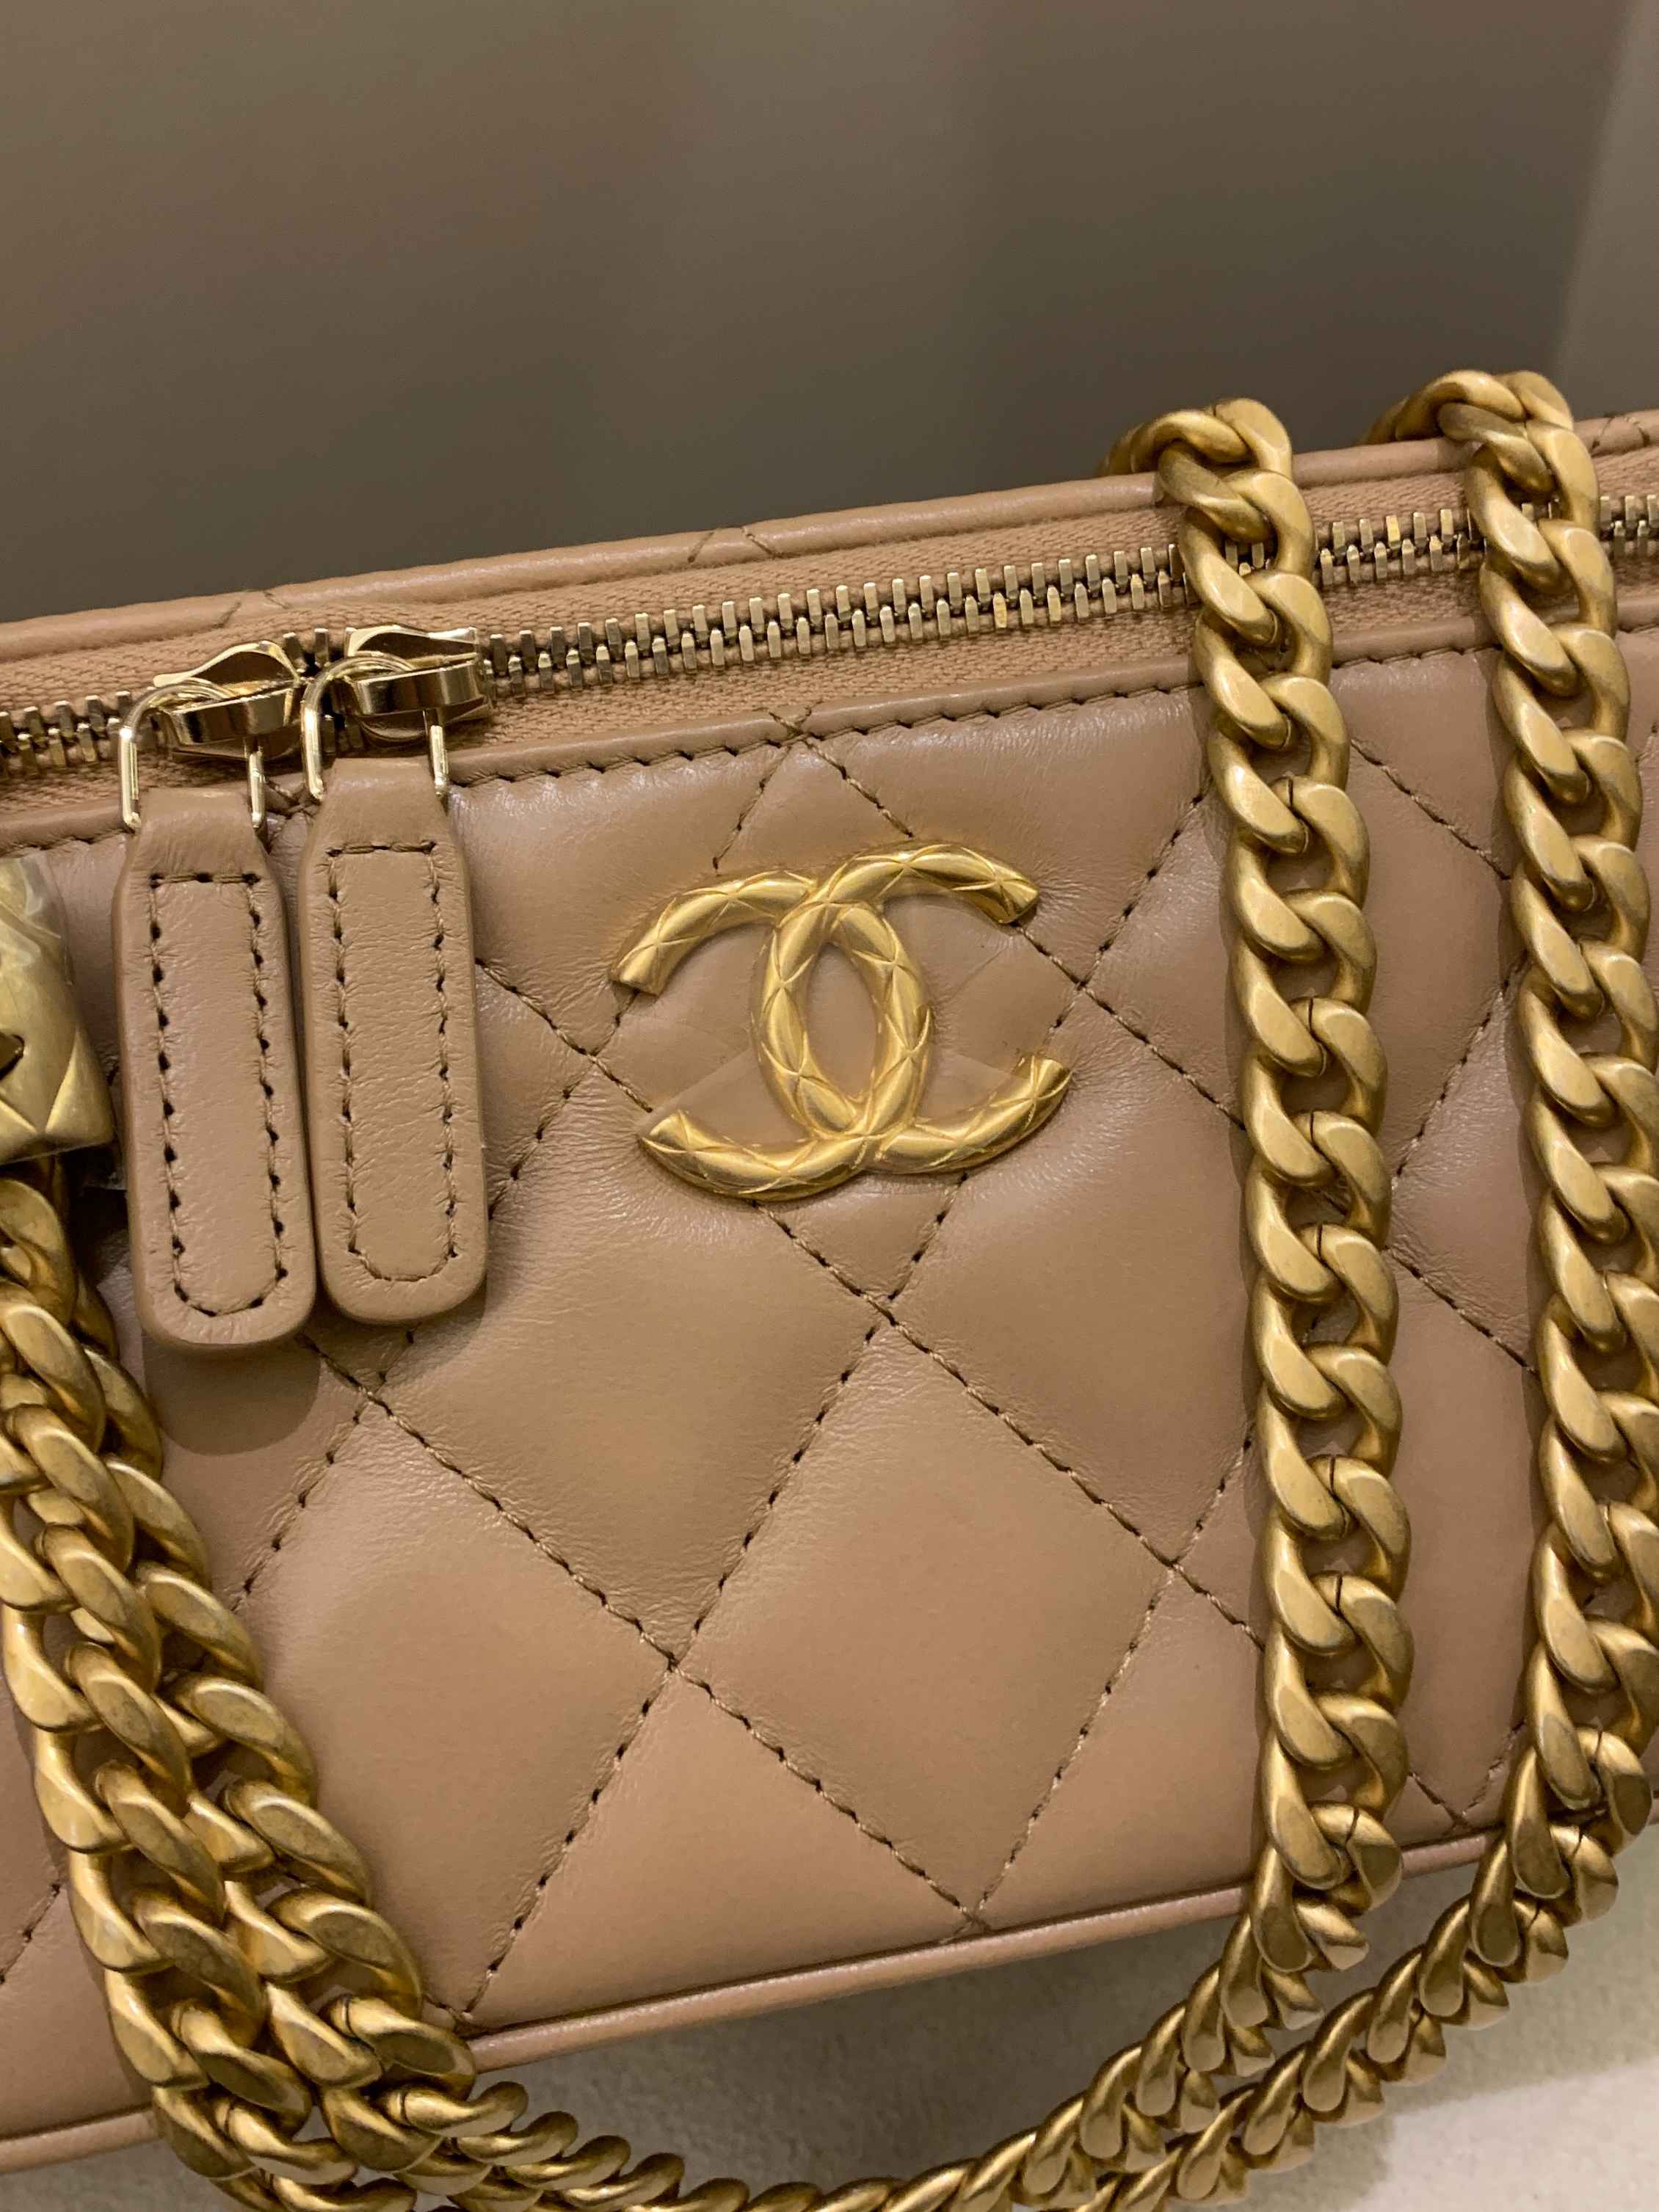 Chanel Bags 21K Vanity Case Bags 2 2 for Sale in Bonita Springs, FL -  OfferUp